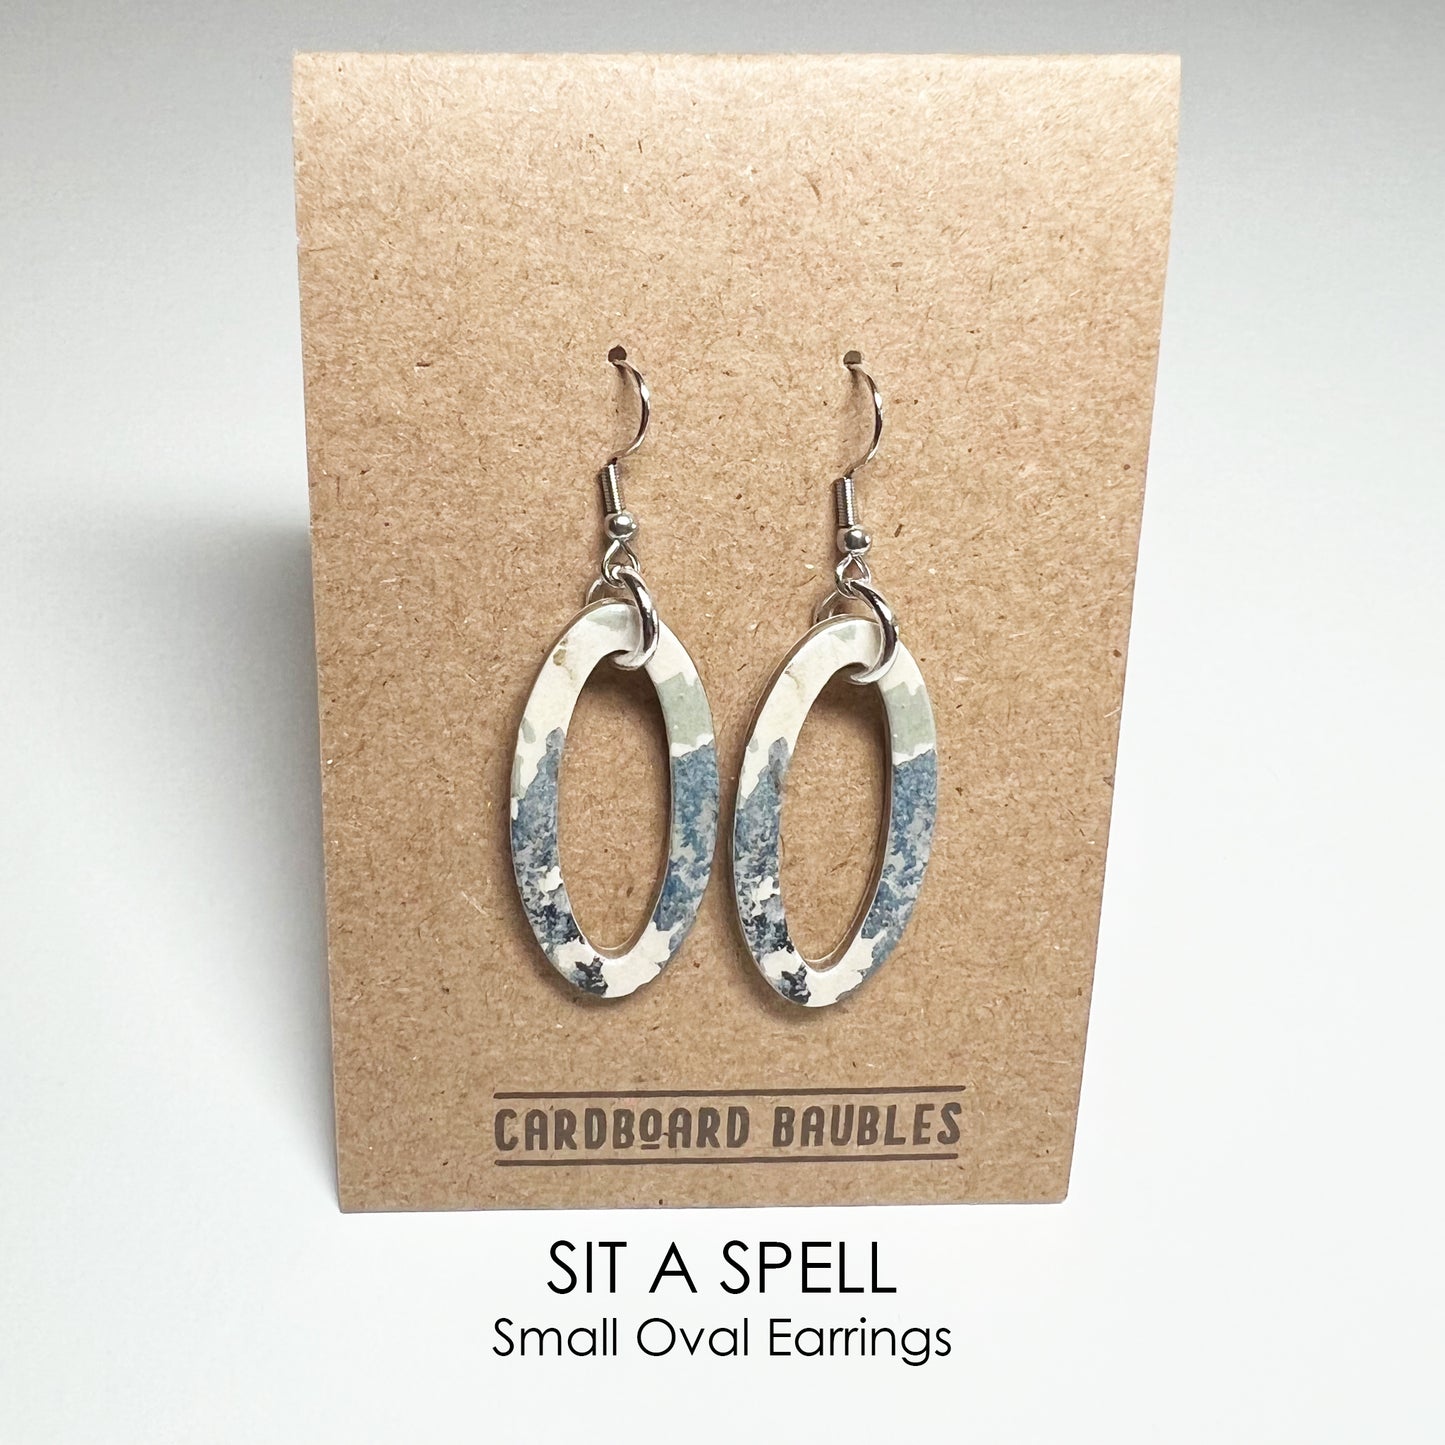 SIT A SPELL - Oval Cardboard Baubles Earrings